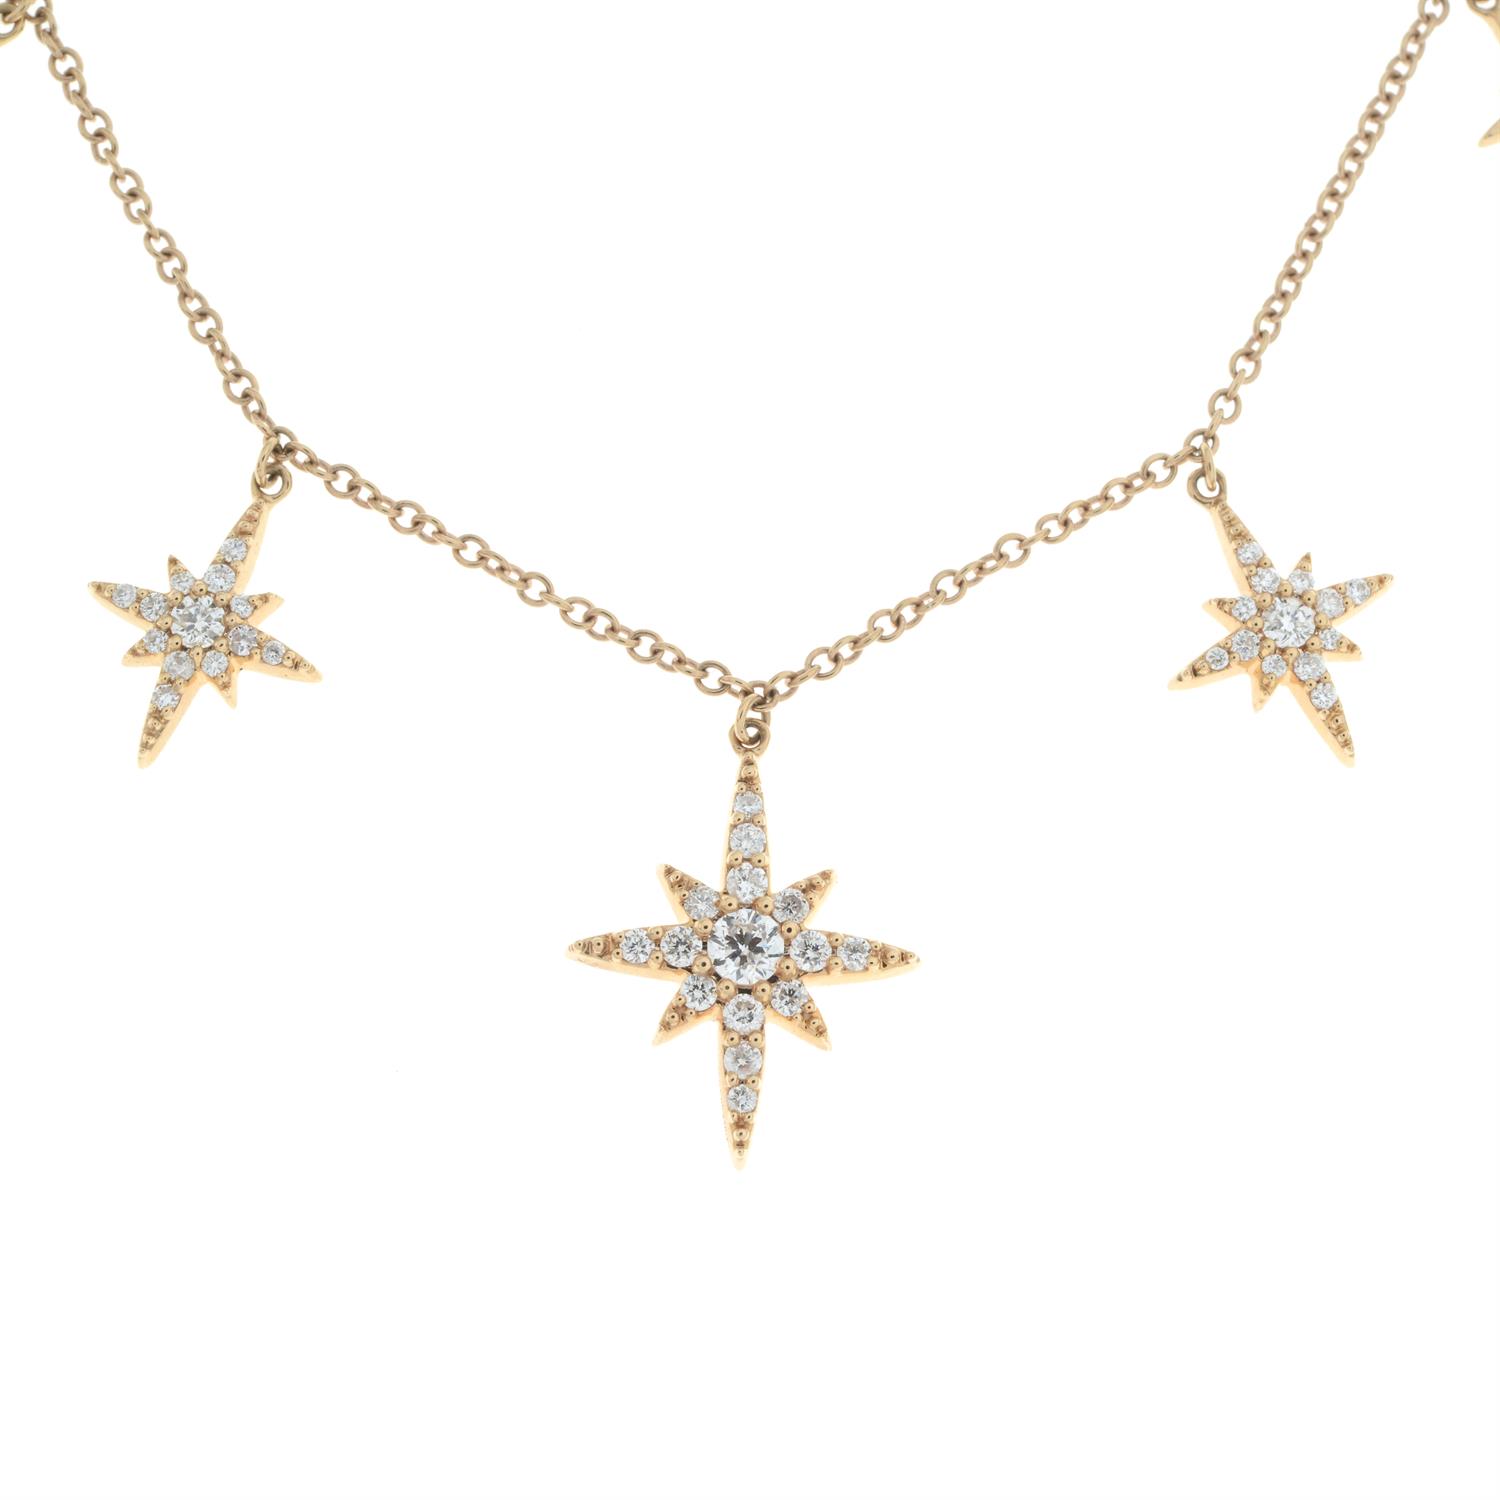 Diamond star fringe necklace - Image 3 of 6